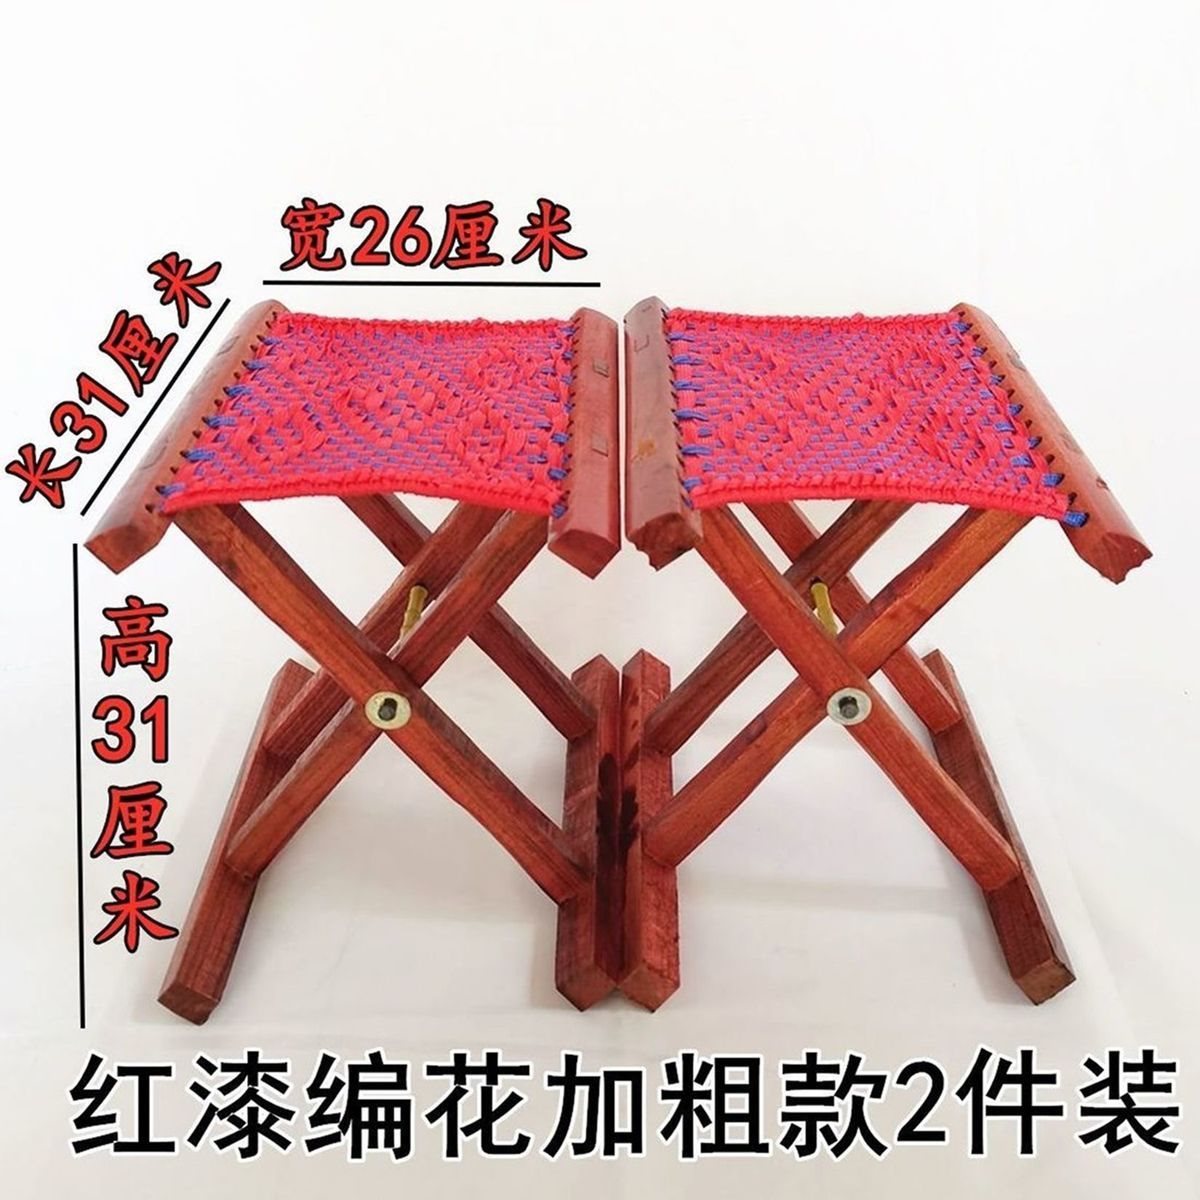 【断掉包赔】凳子家用折叠实木马扎便携式折叠凳钓鱼凳小板凳椅子